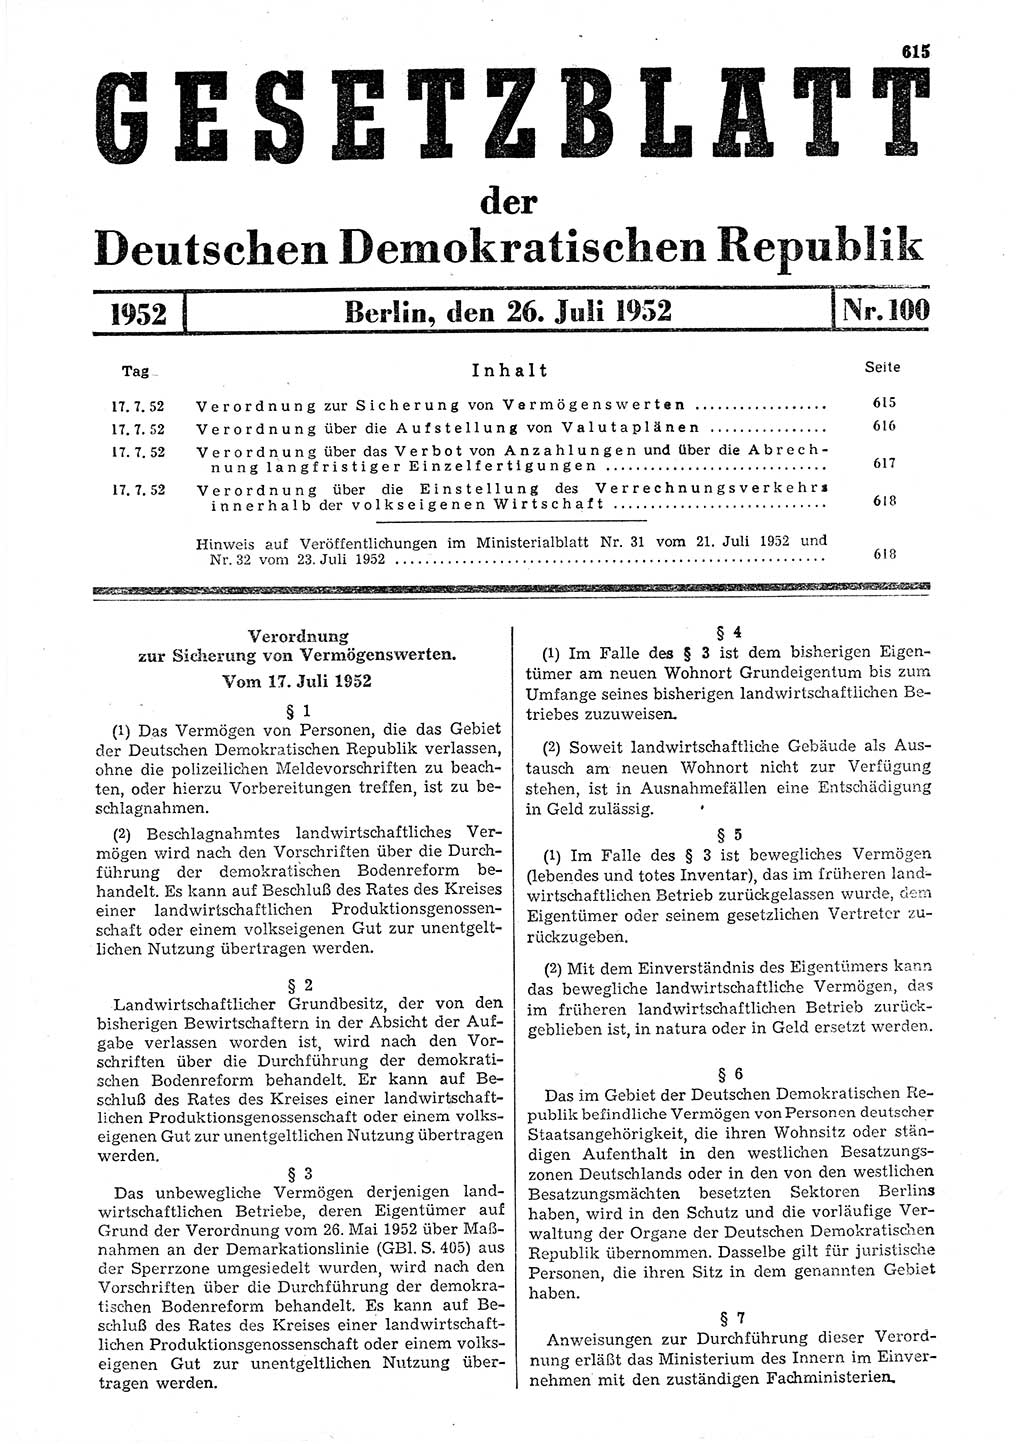 Gesetzblatt (GBl.) der Deutschen Demokratischen Republik (DDR) 1952, Seite 615 (GBl. DDR 1952, S. 615)